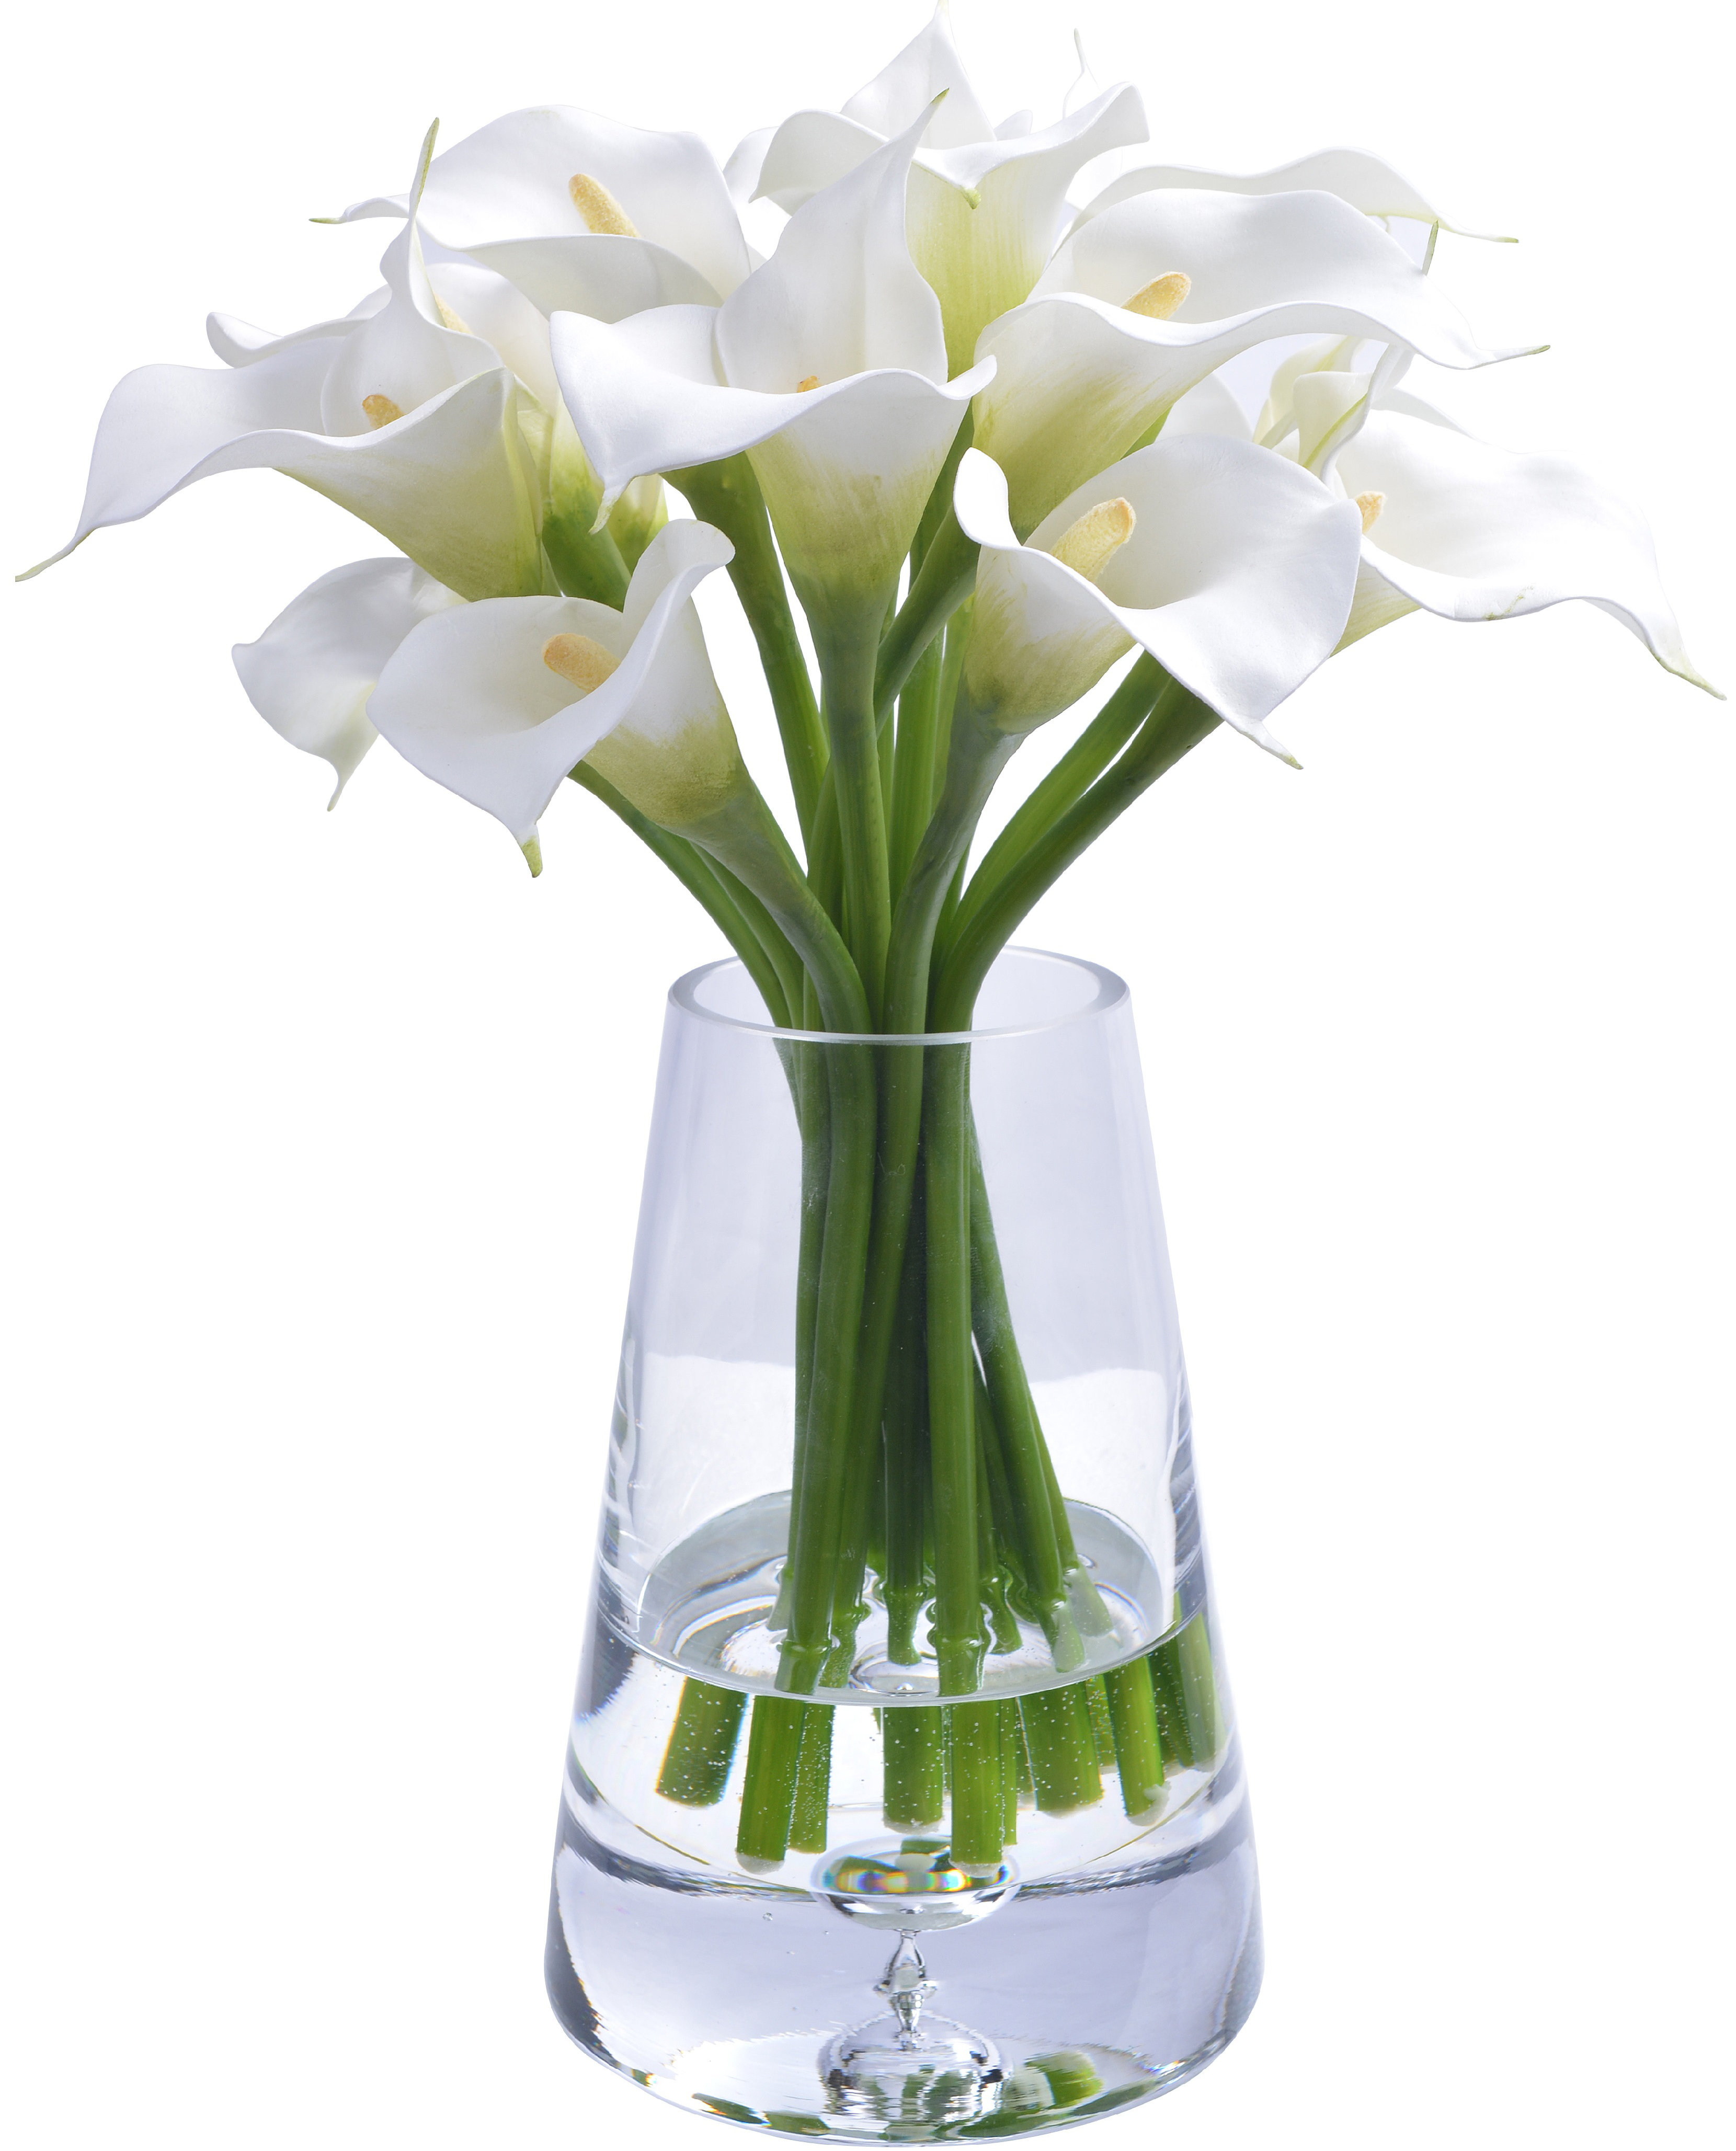 ايموجي مناظر طبيعية  - صفحة 2 Calla-lily-floral-arrangements-in-glass